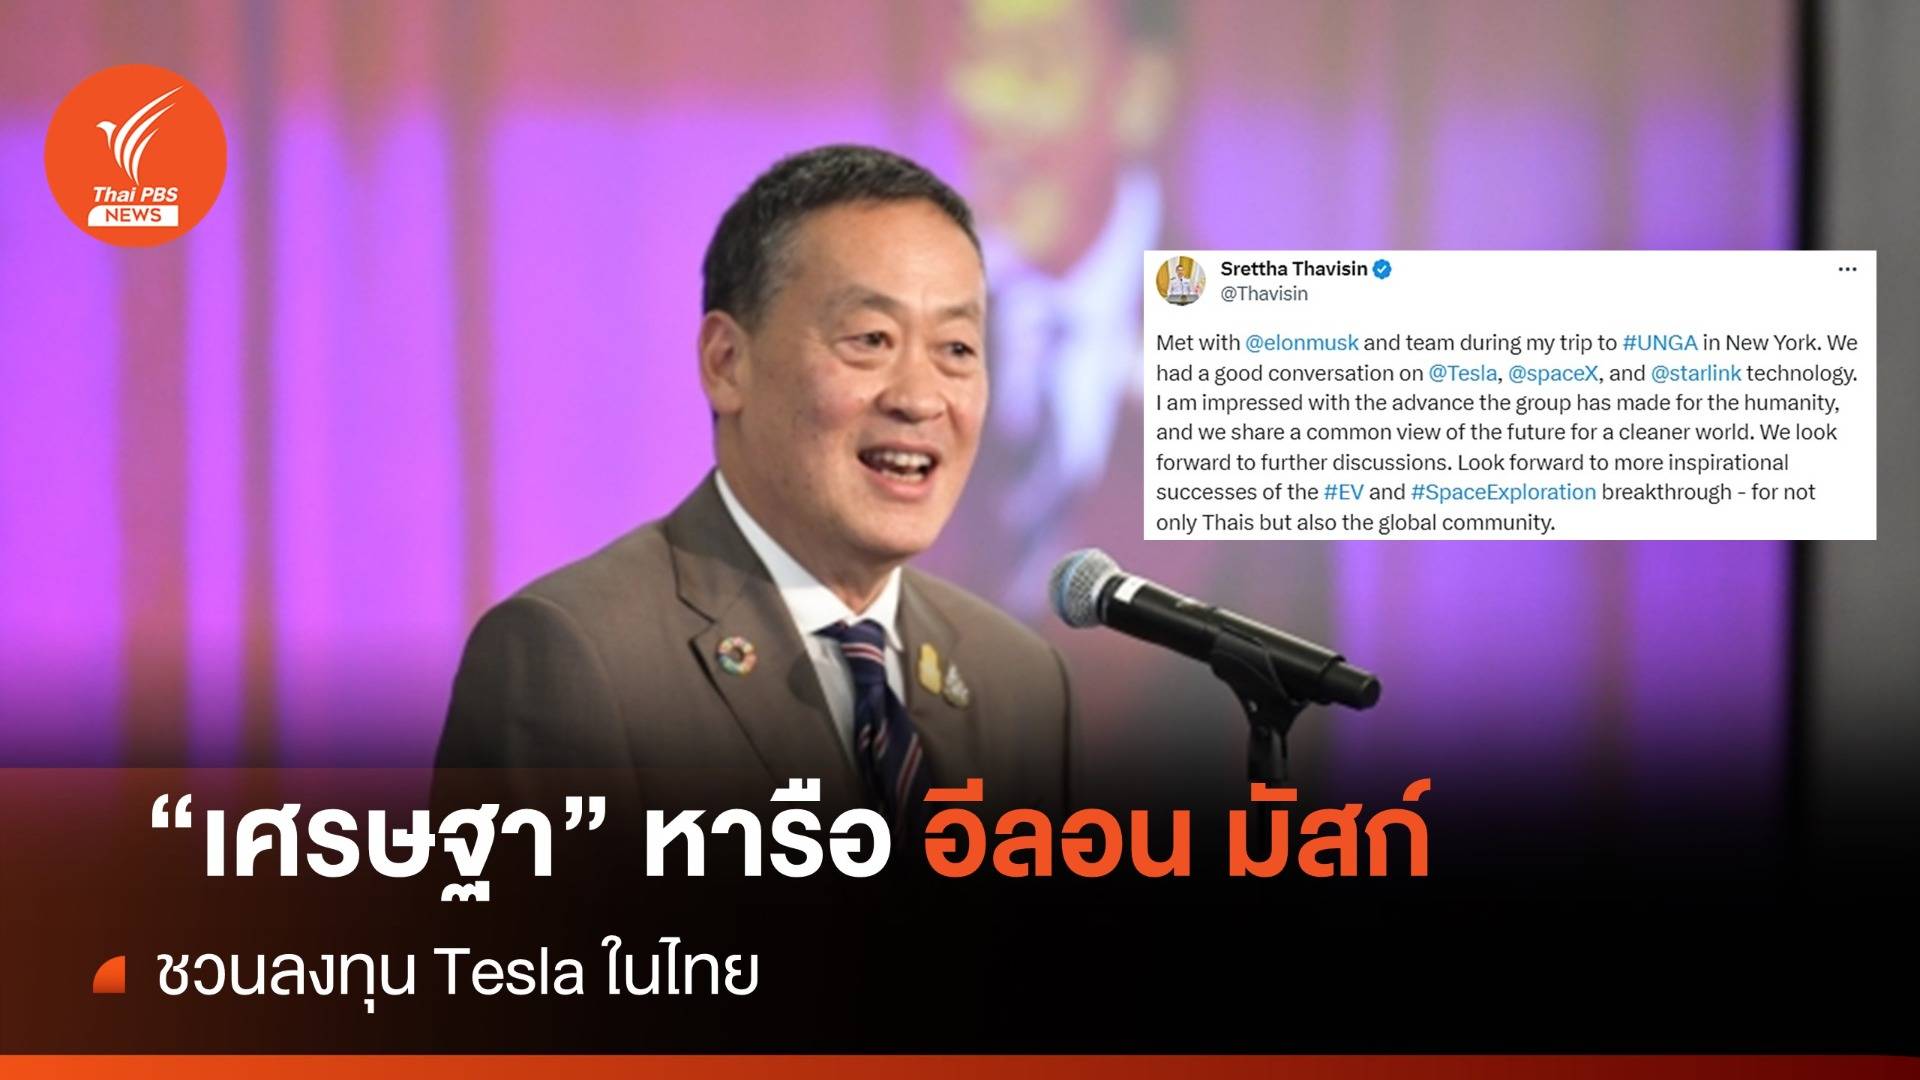 "เศรษฐา" ชวน "อีลอน มัสก์" ลงทุน Tesla ในไทย